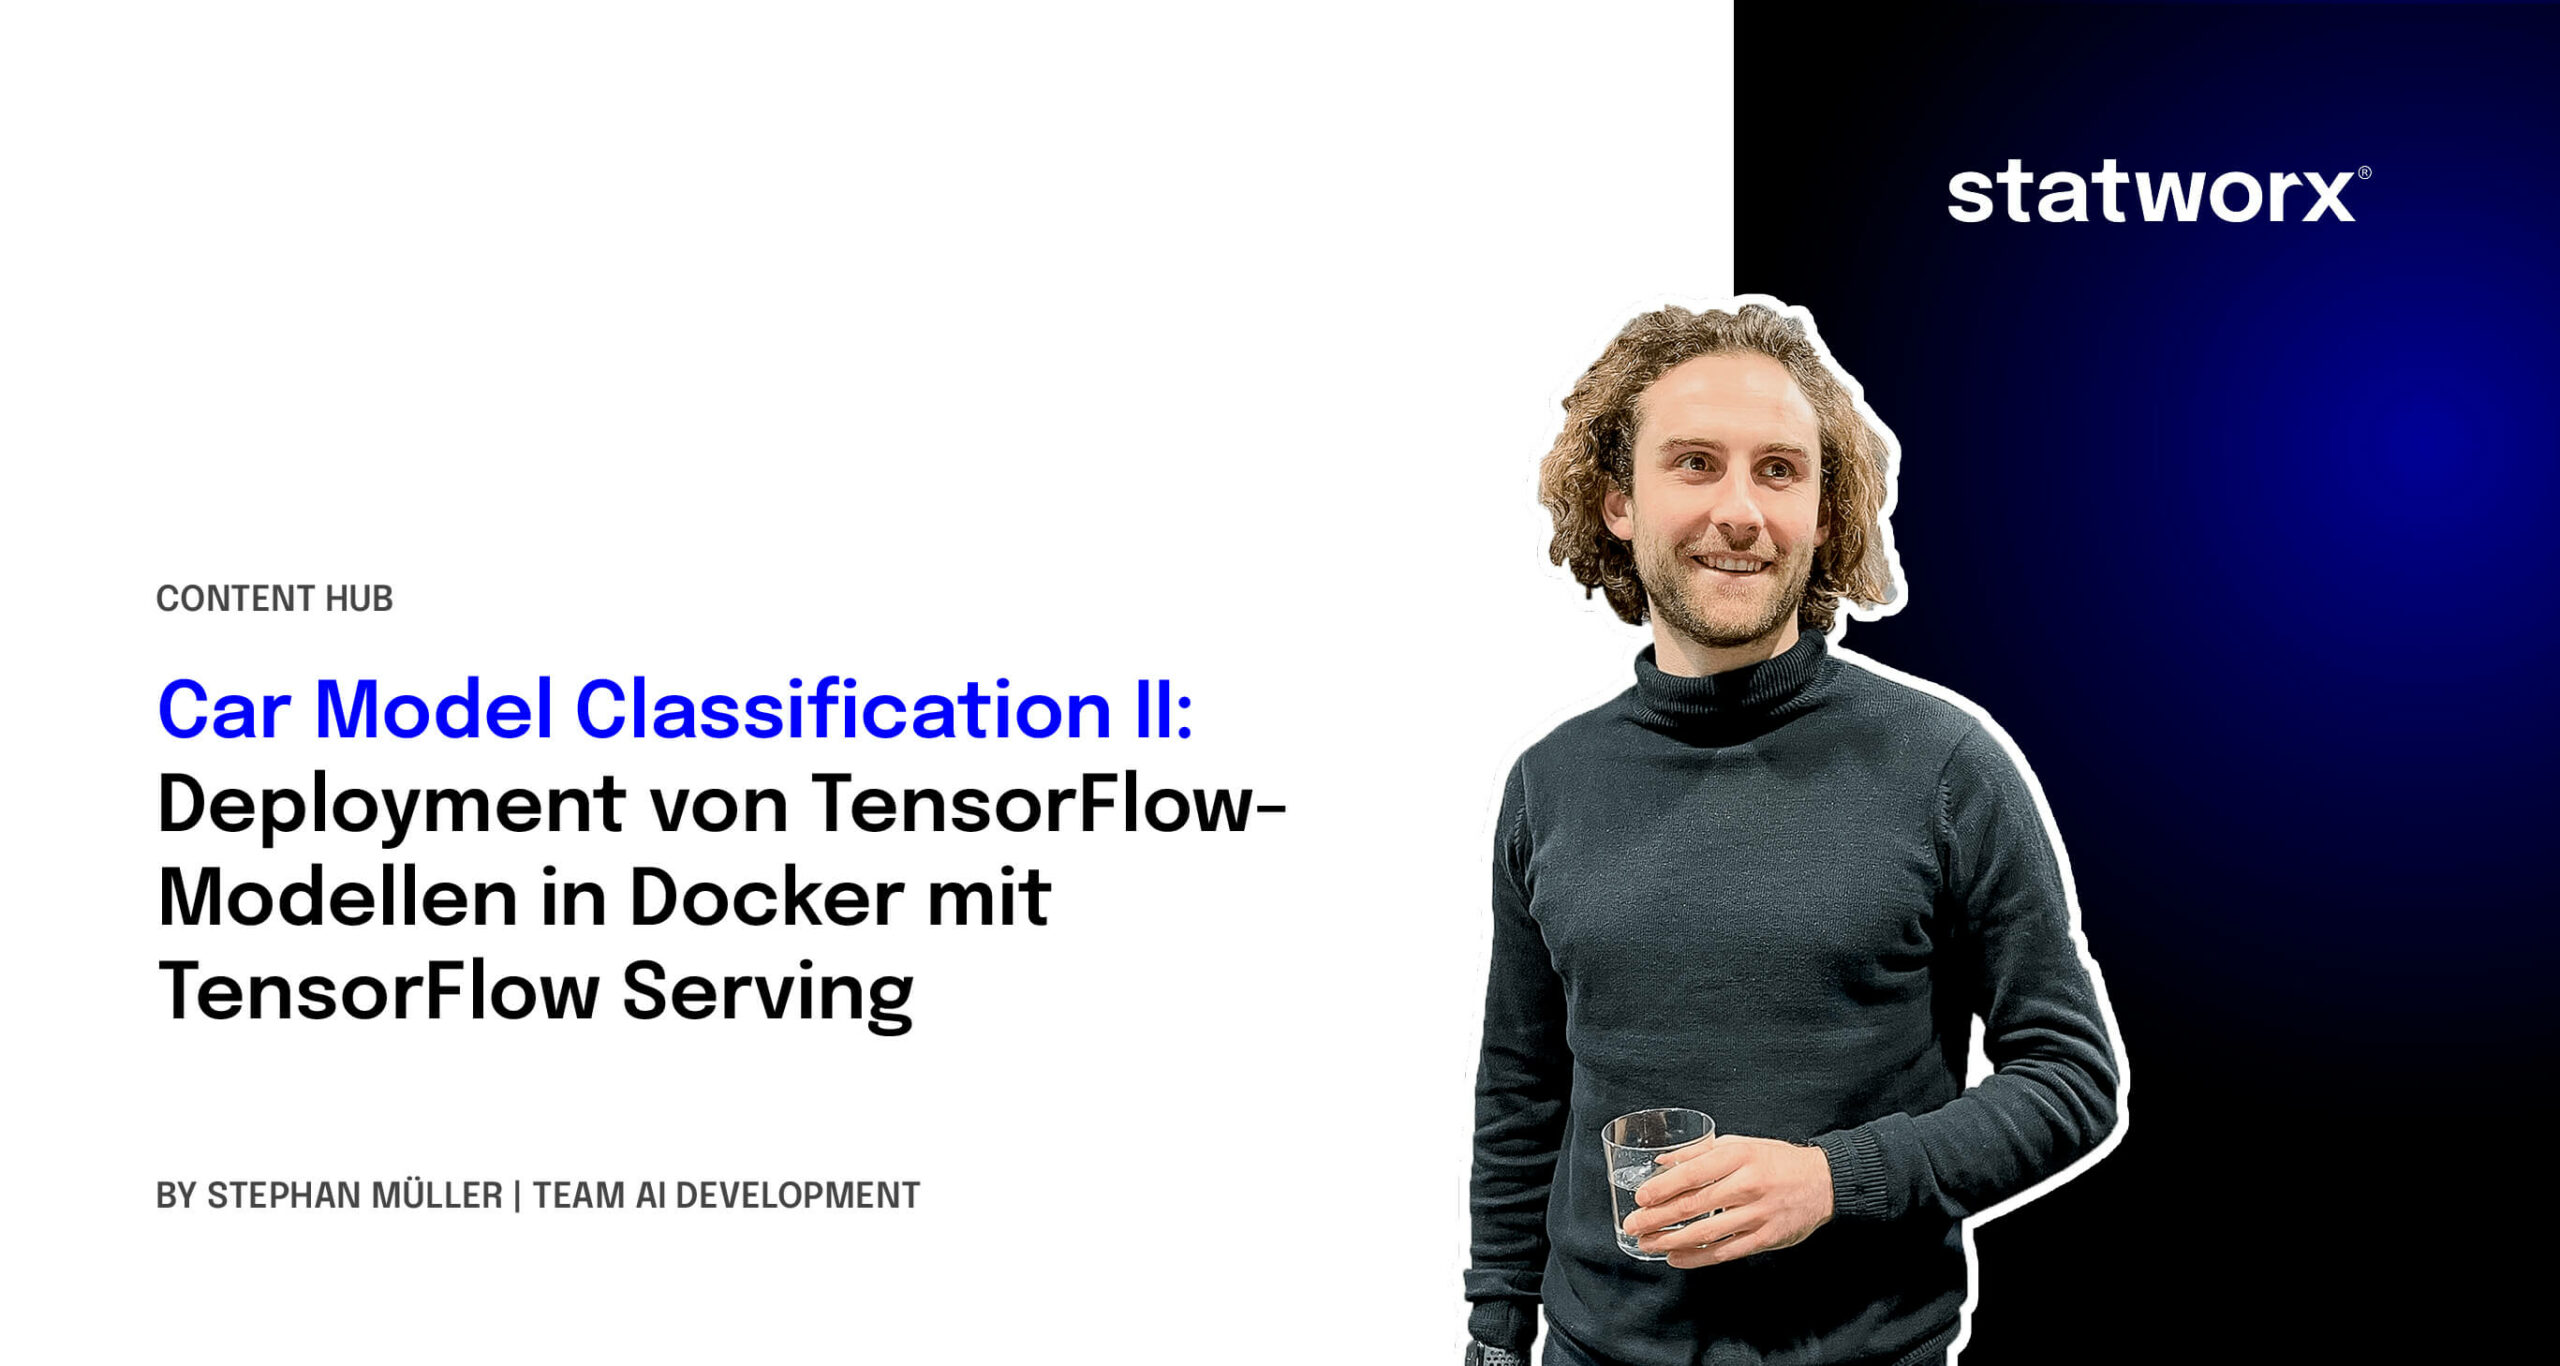 Car Model Classification II: Deployment von TensorFlow-Modellen in Docker mit TensorFlow Serving